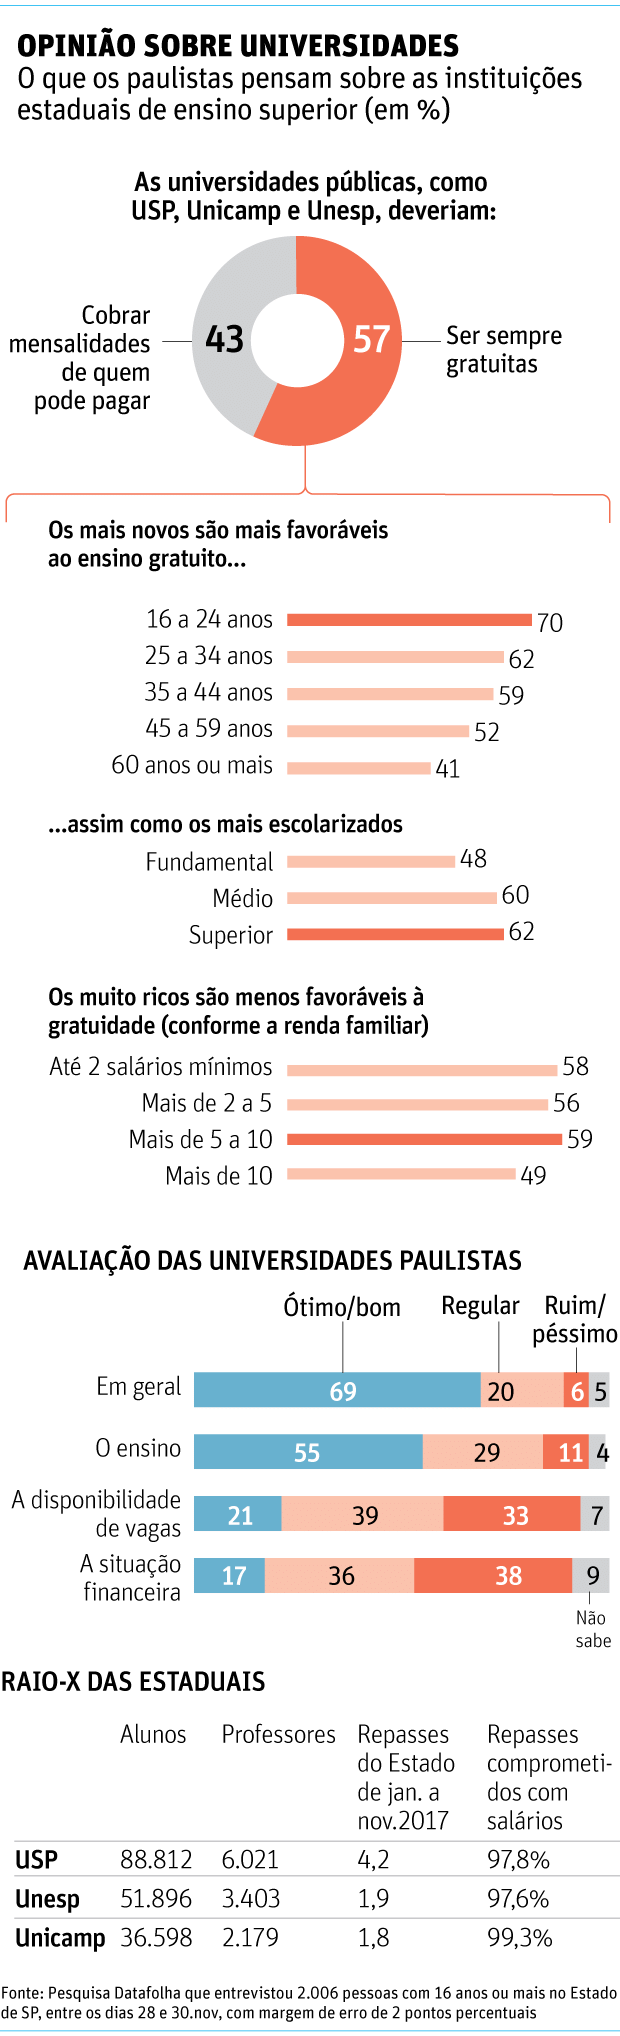 OPINIÃO SOBRE UNIVERSIDADESO que os paulistas pensam sobre as instituições estaduais de ensino superior (em %)